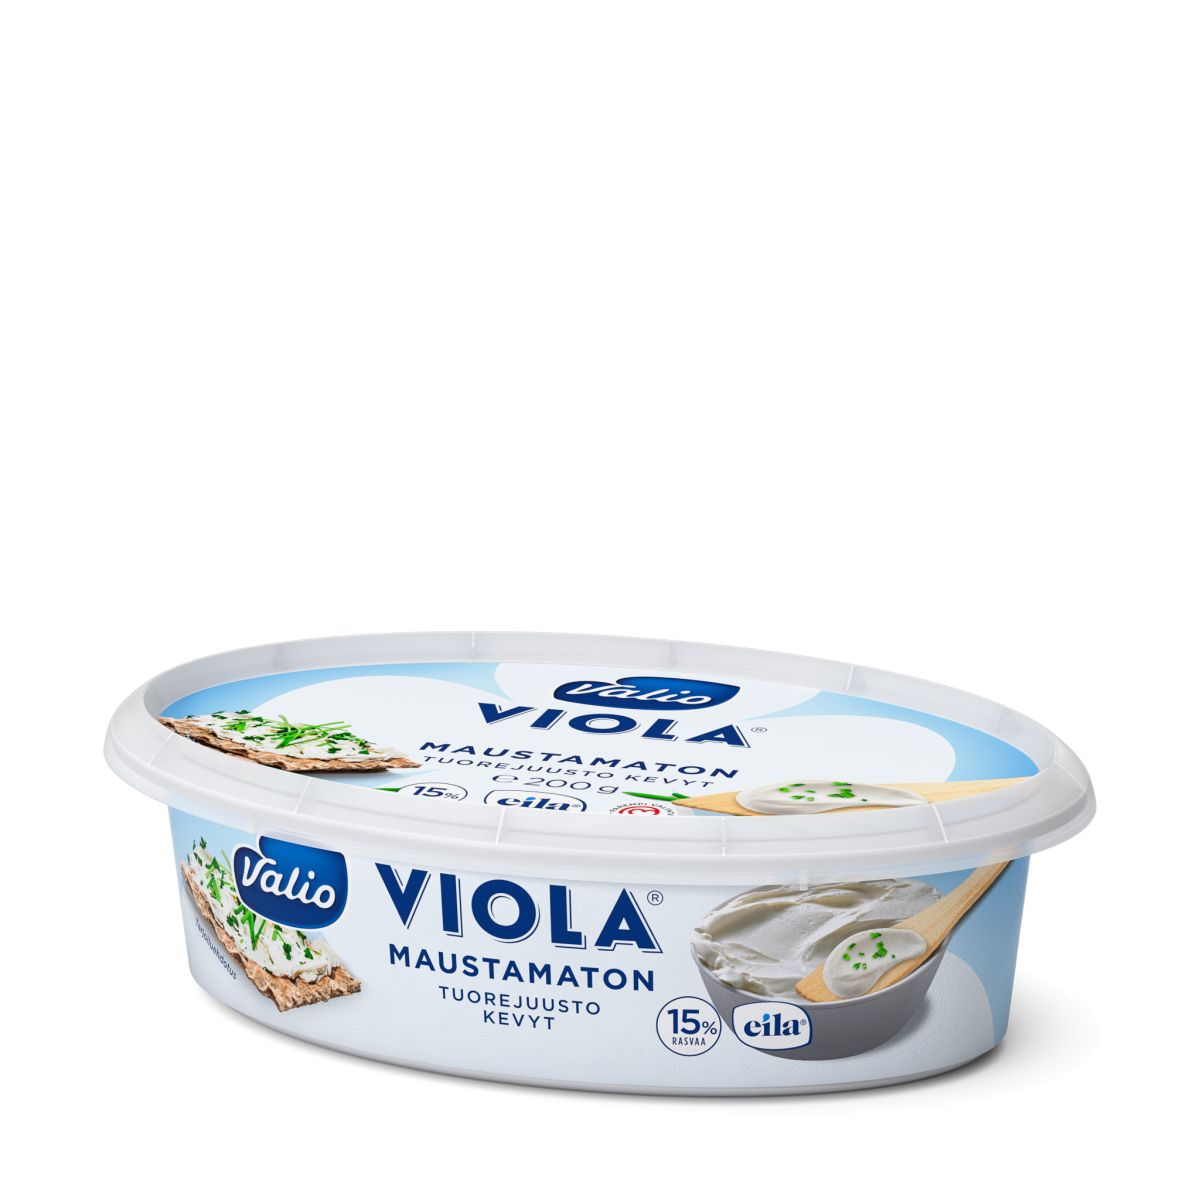 Valio Viola lätt naturel cream cheese lactose free 200g